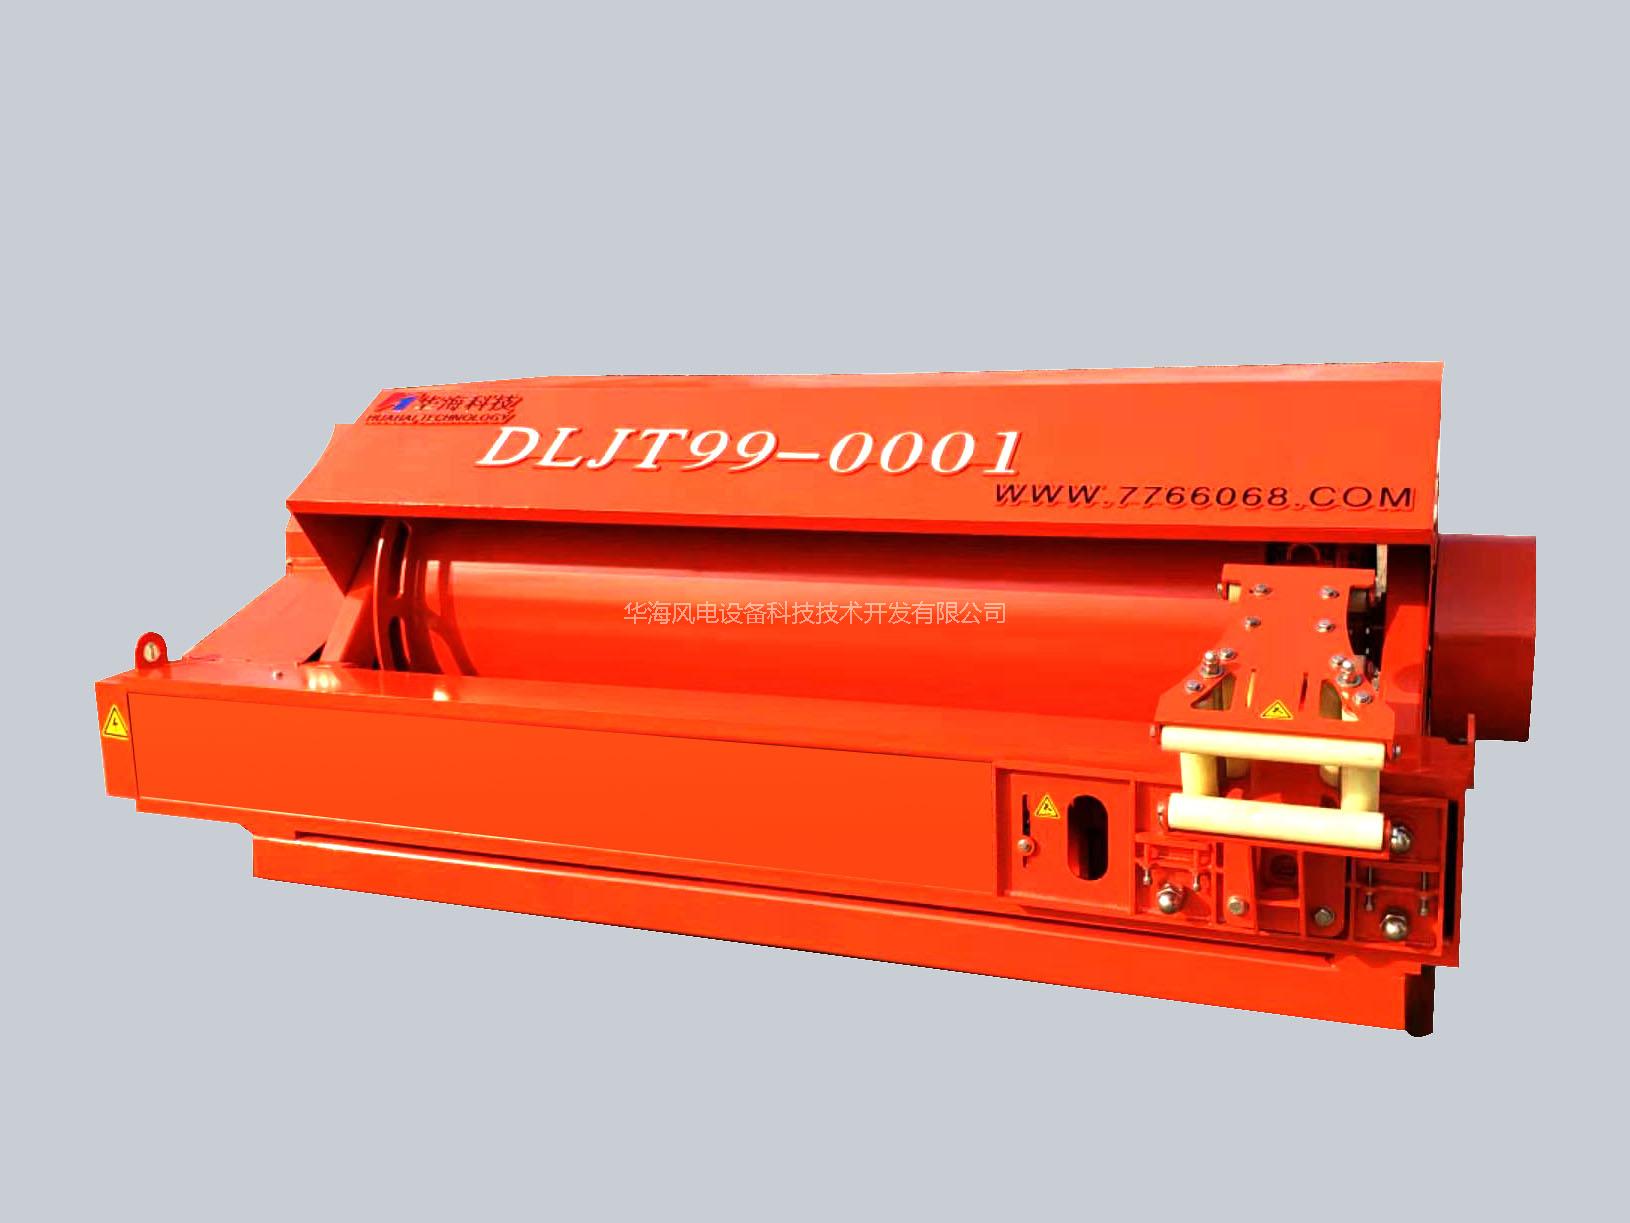 日立建机——电动挖掘机自动供电装备DLJT99 